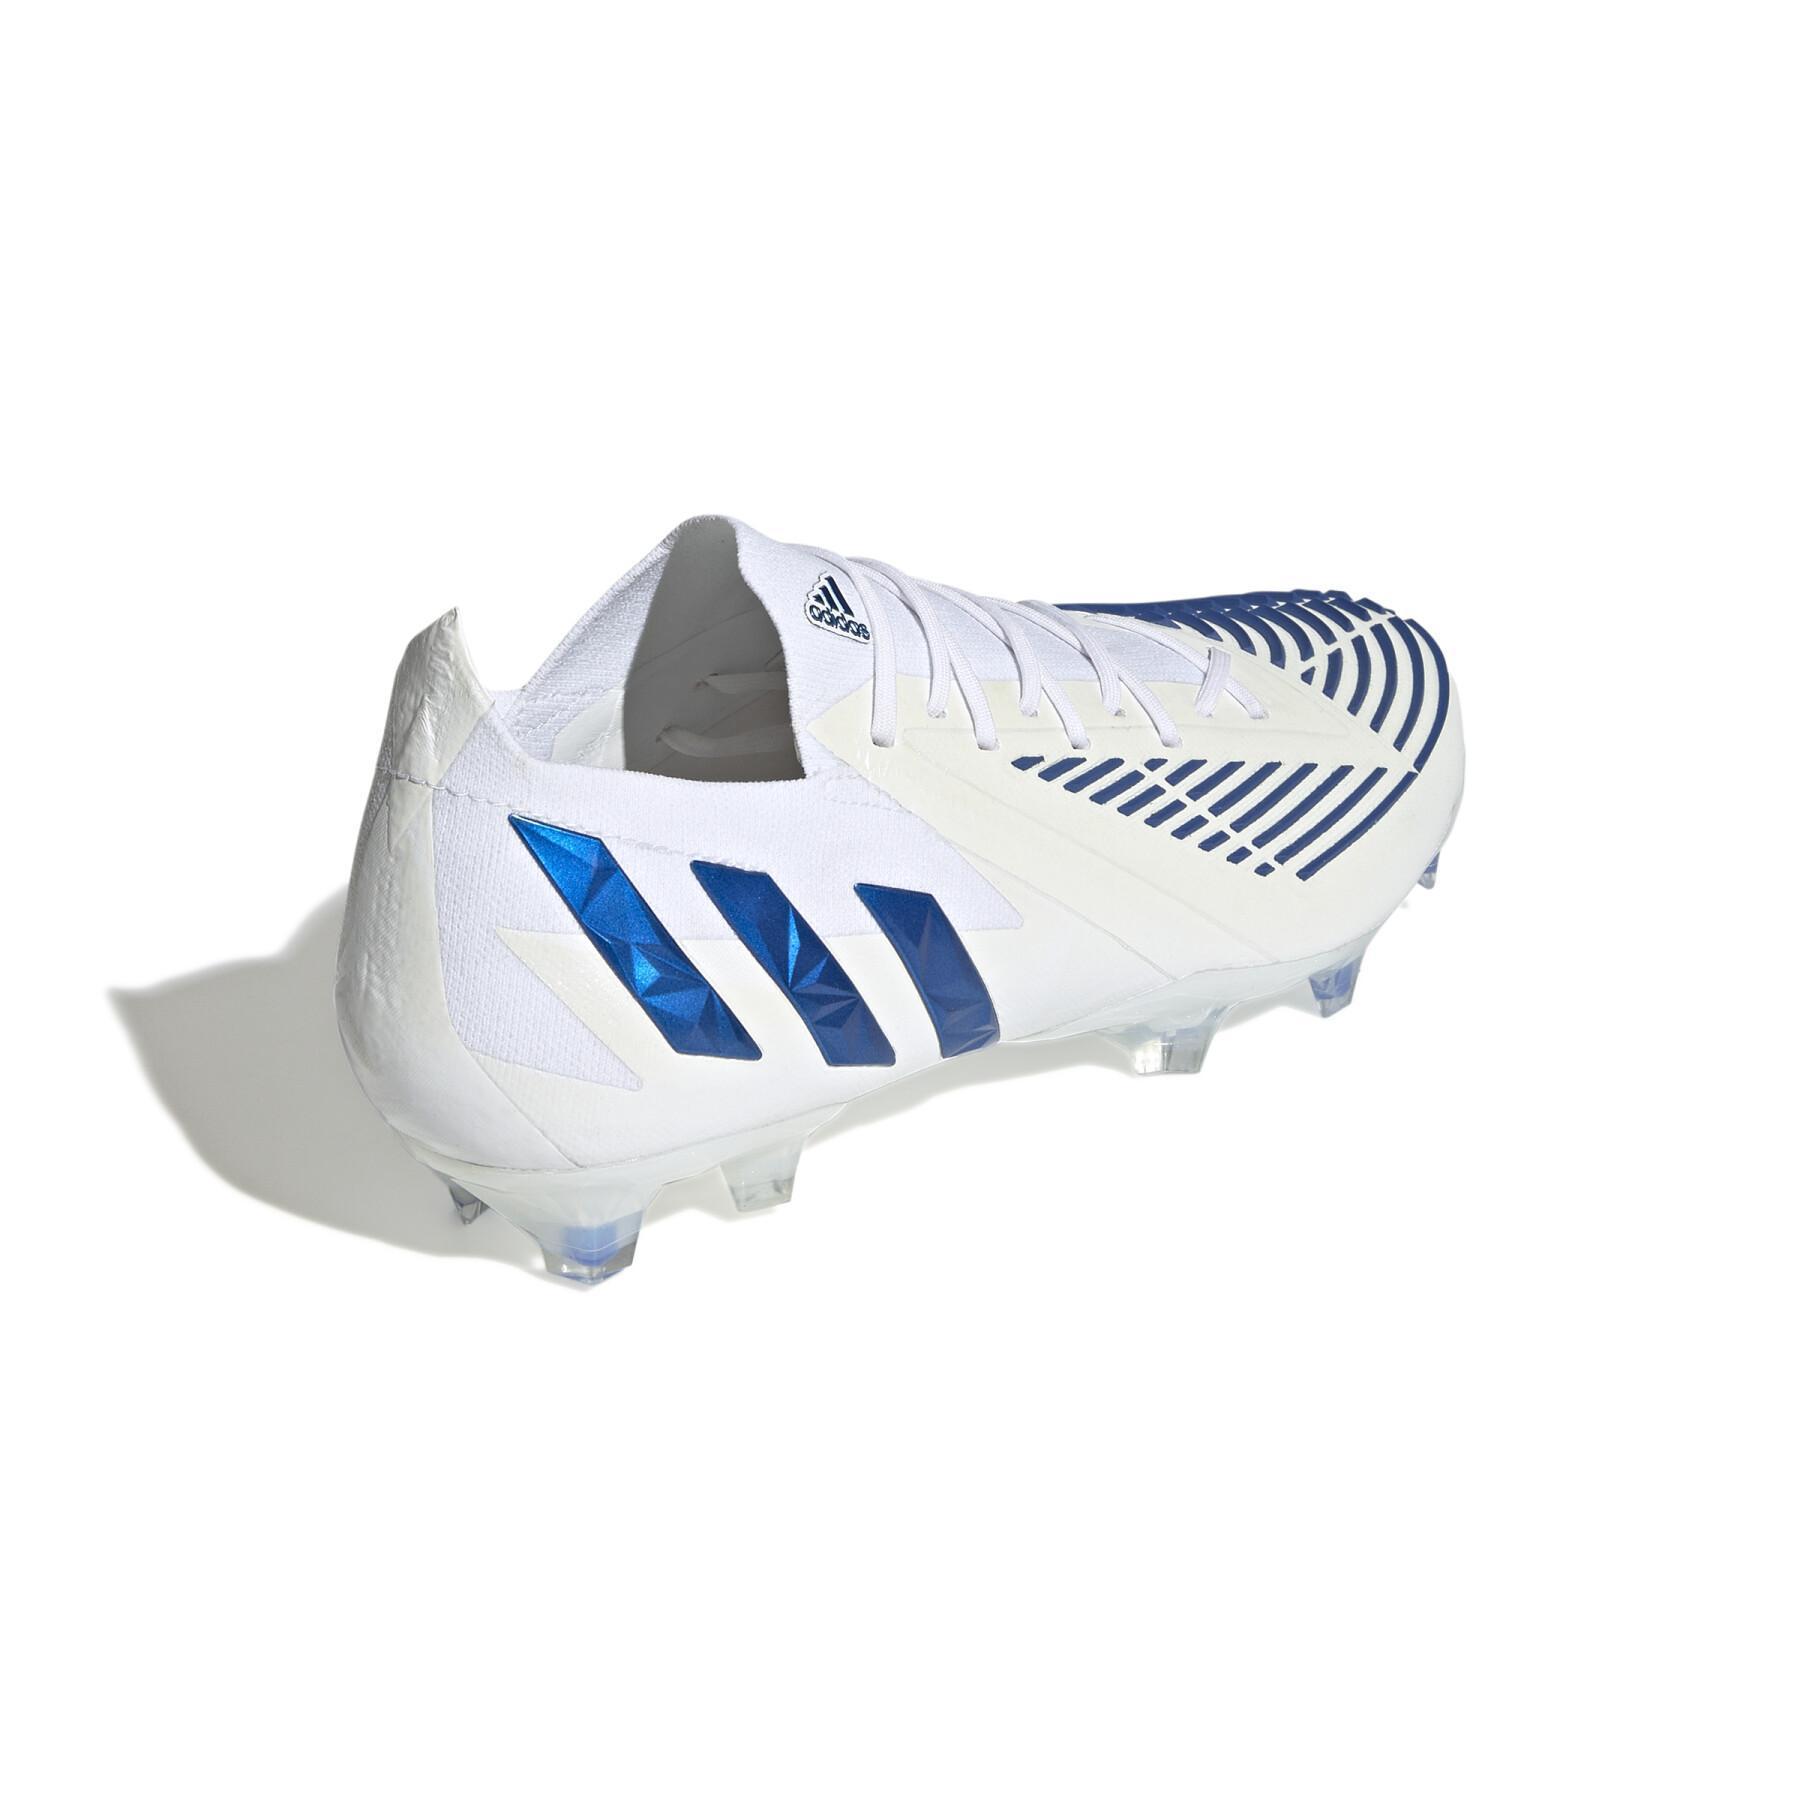 Soccer shoes adidas Predator Edge.1 Low FG - Diamond Edge Pack